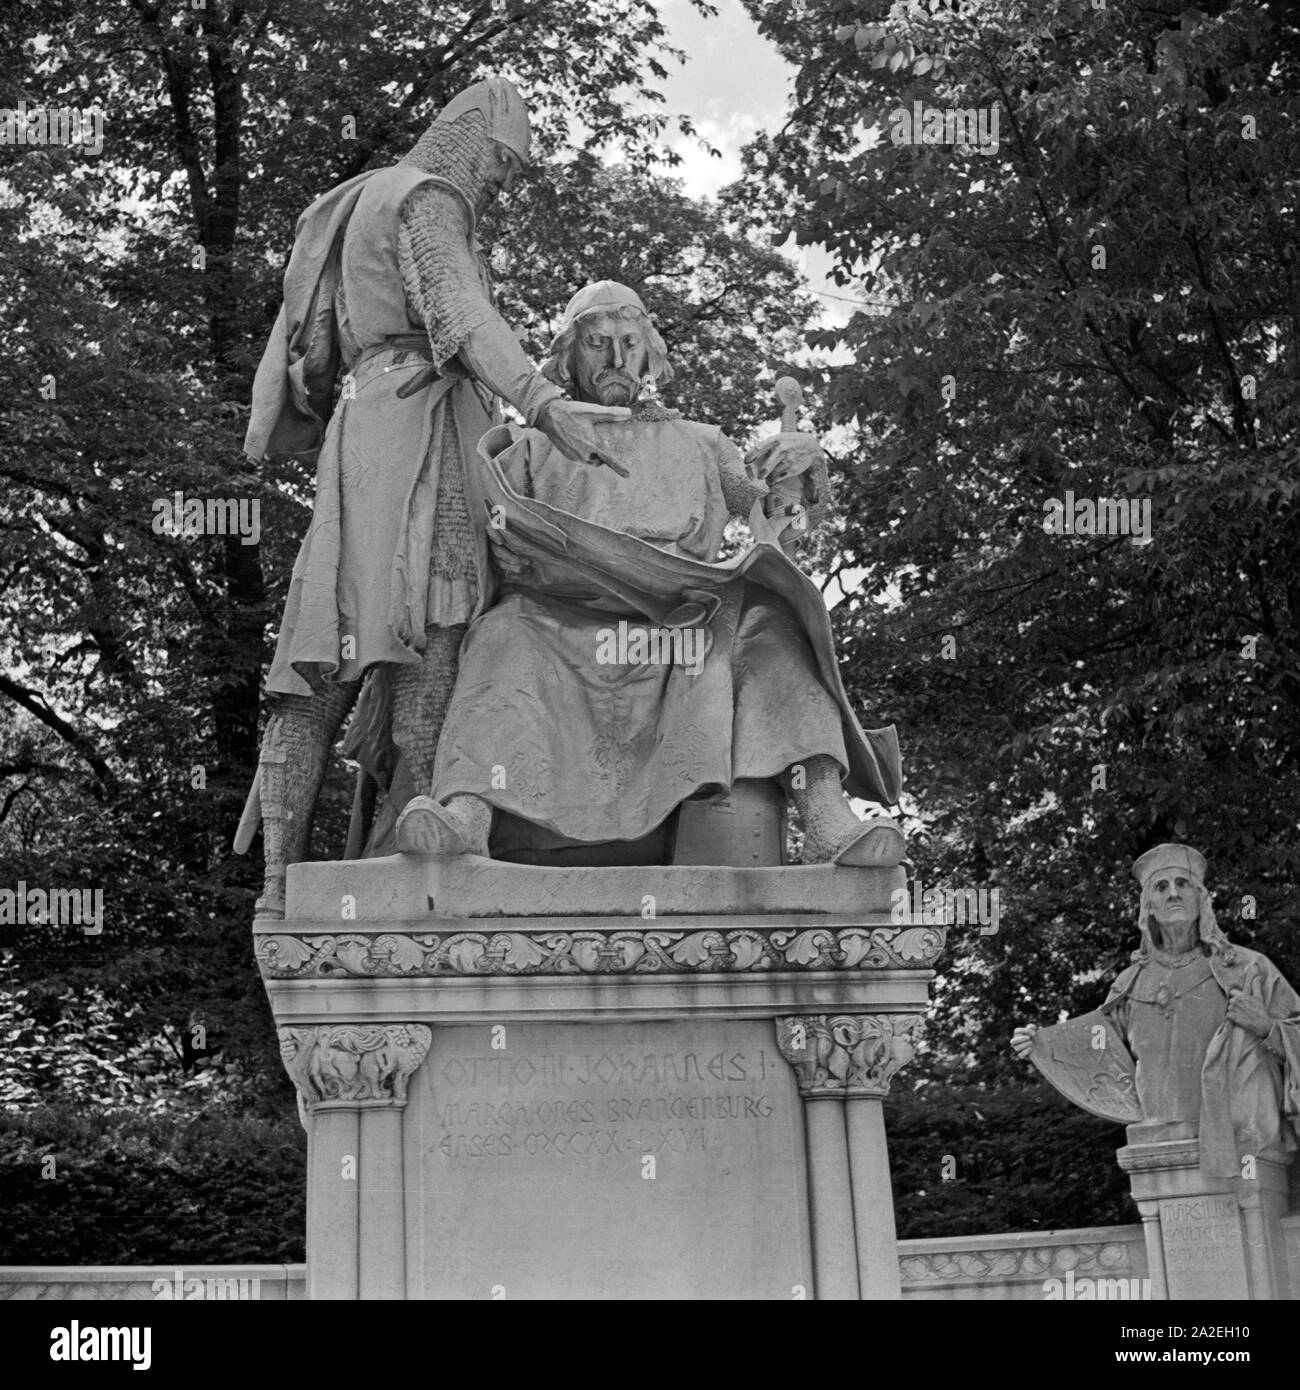 Die Siegesallee in Berlin, hier die Figuren Johann I. und Otto III., Deutschland 1930er Jahre. The Siegesallee in Berlin: statues of John I and Otto III, Germany 1930s. Stock Photo